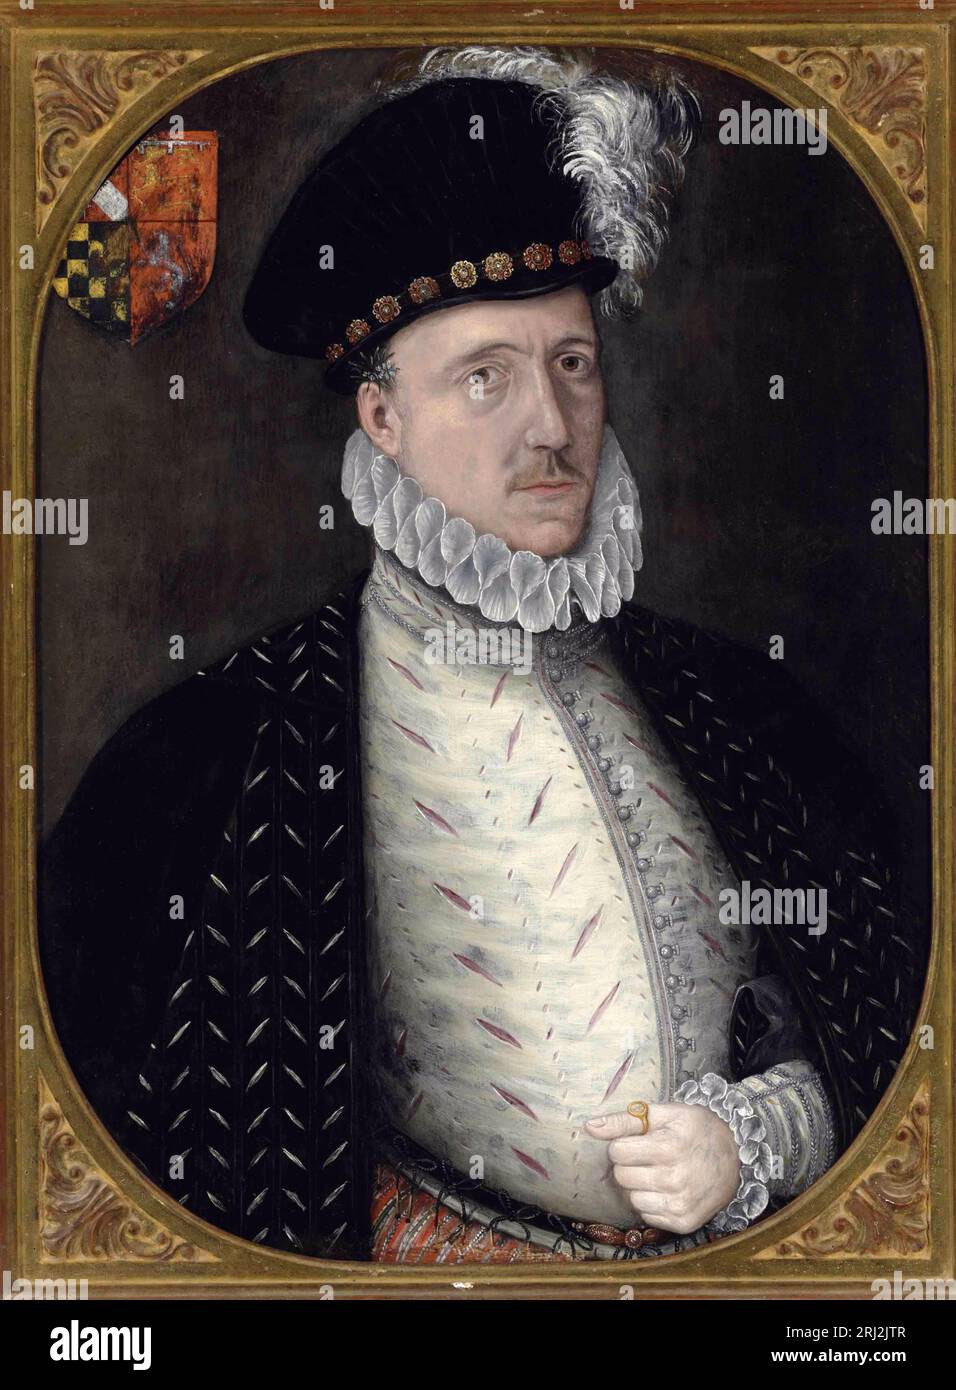 Charles Howard, 1. Earl of Nottingham, 2. Baron Howard of Effingham. Er war Lord High Admiral unter ElizabethI und als Kommandeur der englischen Streitkräfte während der Kämpfe gegen die spanische Armada und war hauptsächlich verantwortlich für den Sieg, der England vor der Invasion durch das spanische Reich rettete. Stockfoto